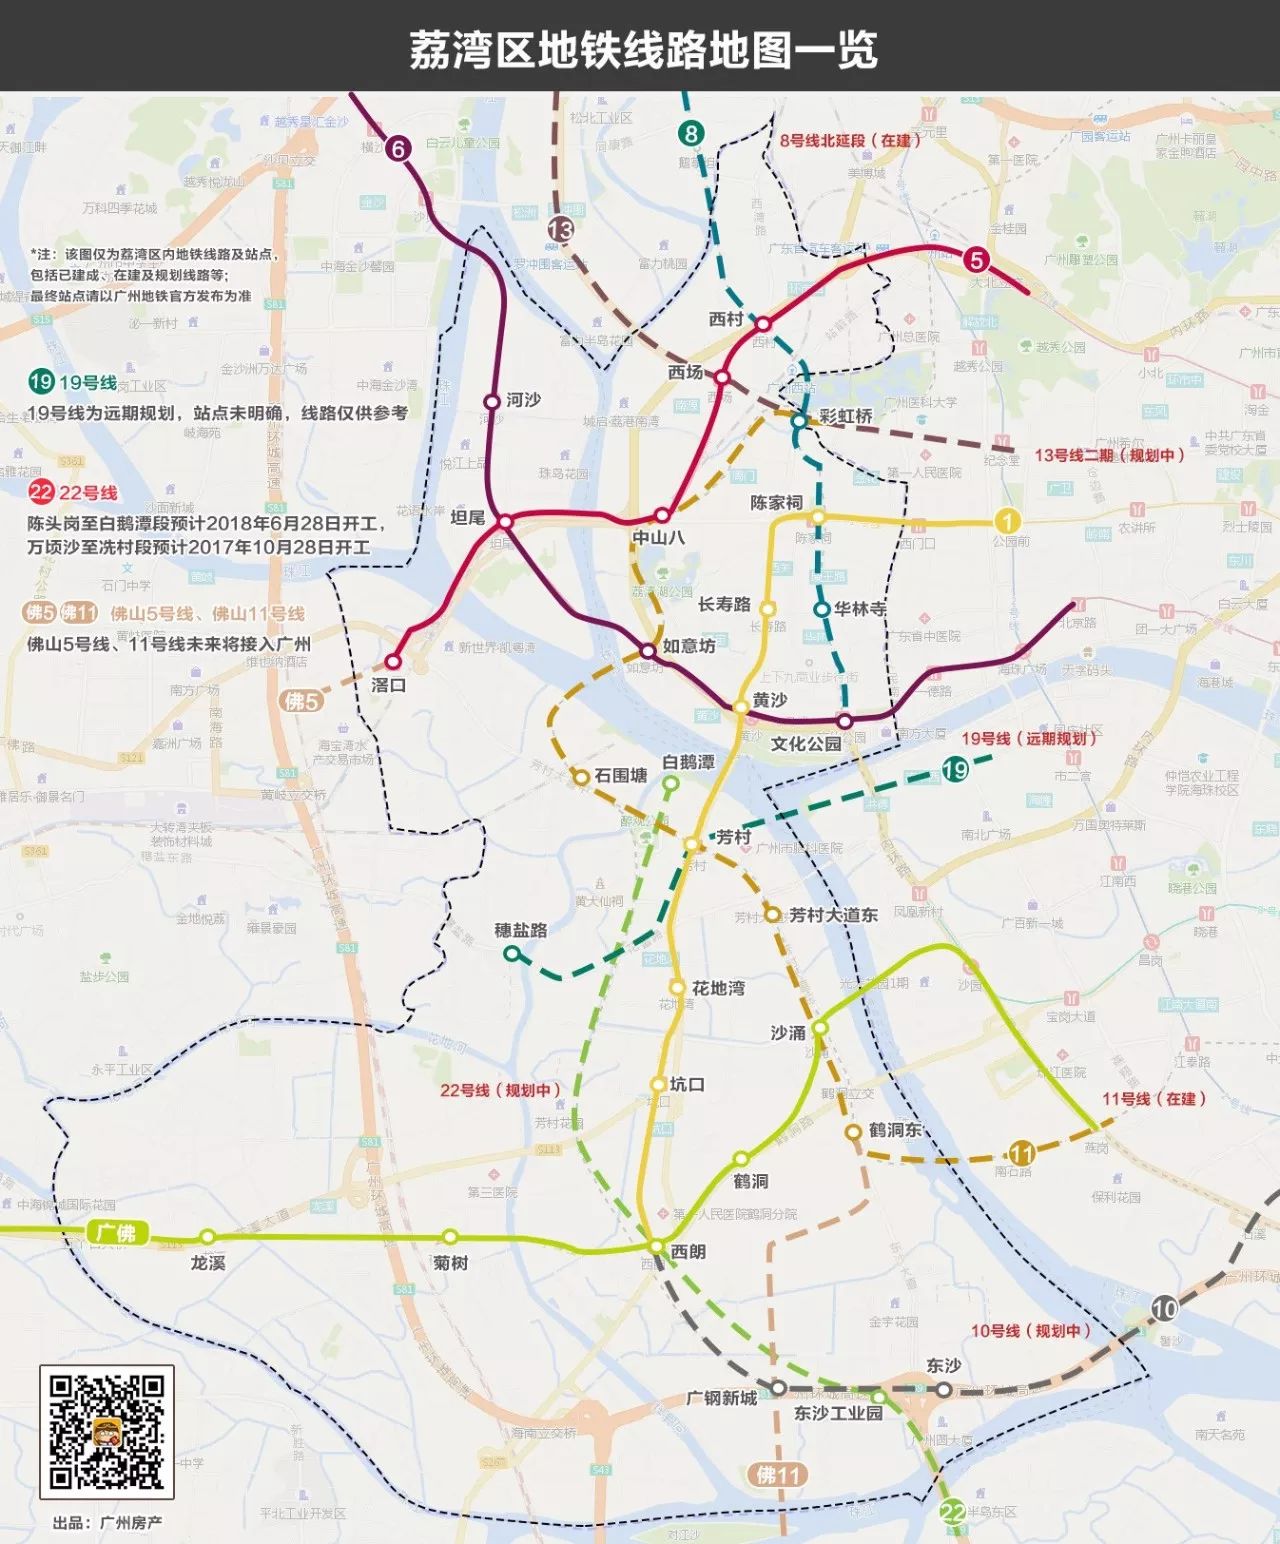 吐血整理!广州11区最全地铁线路图